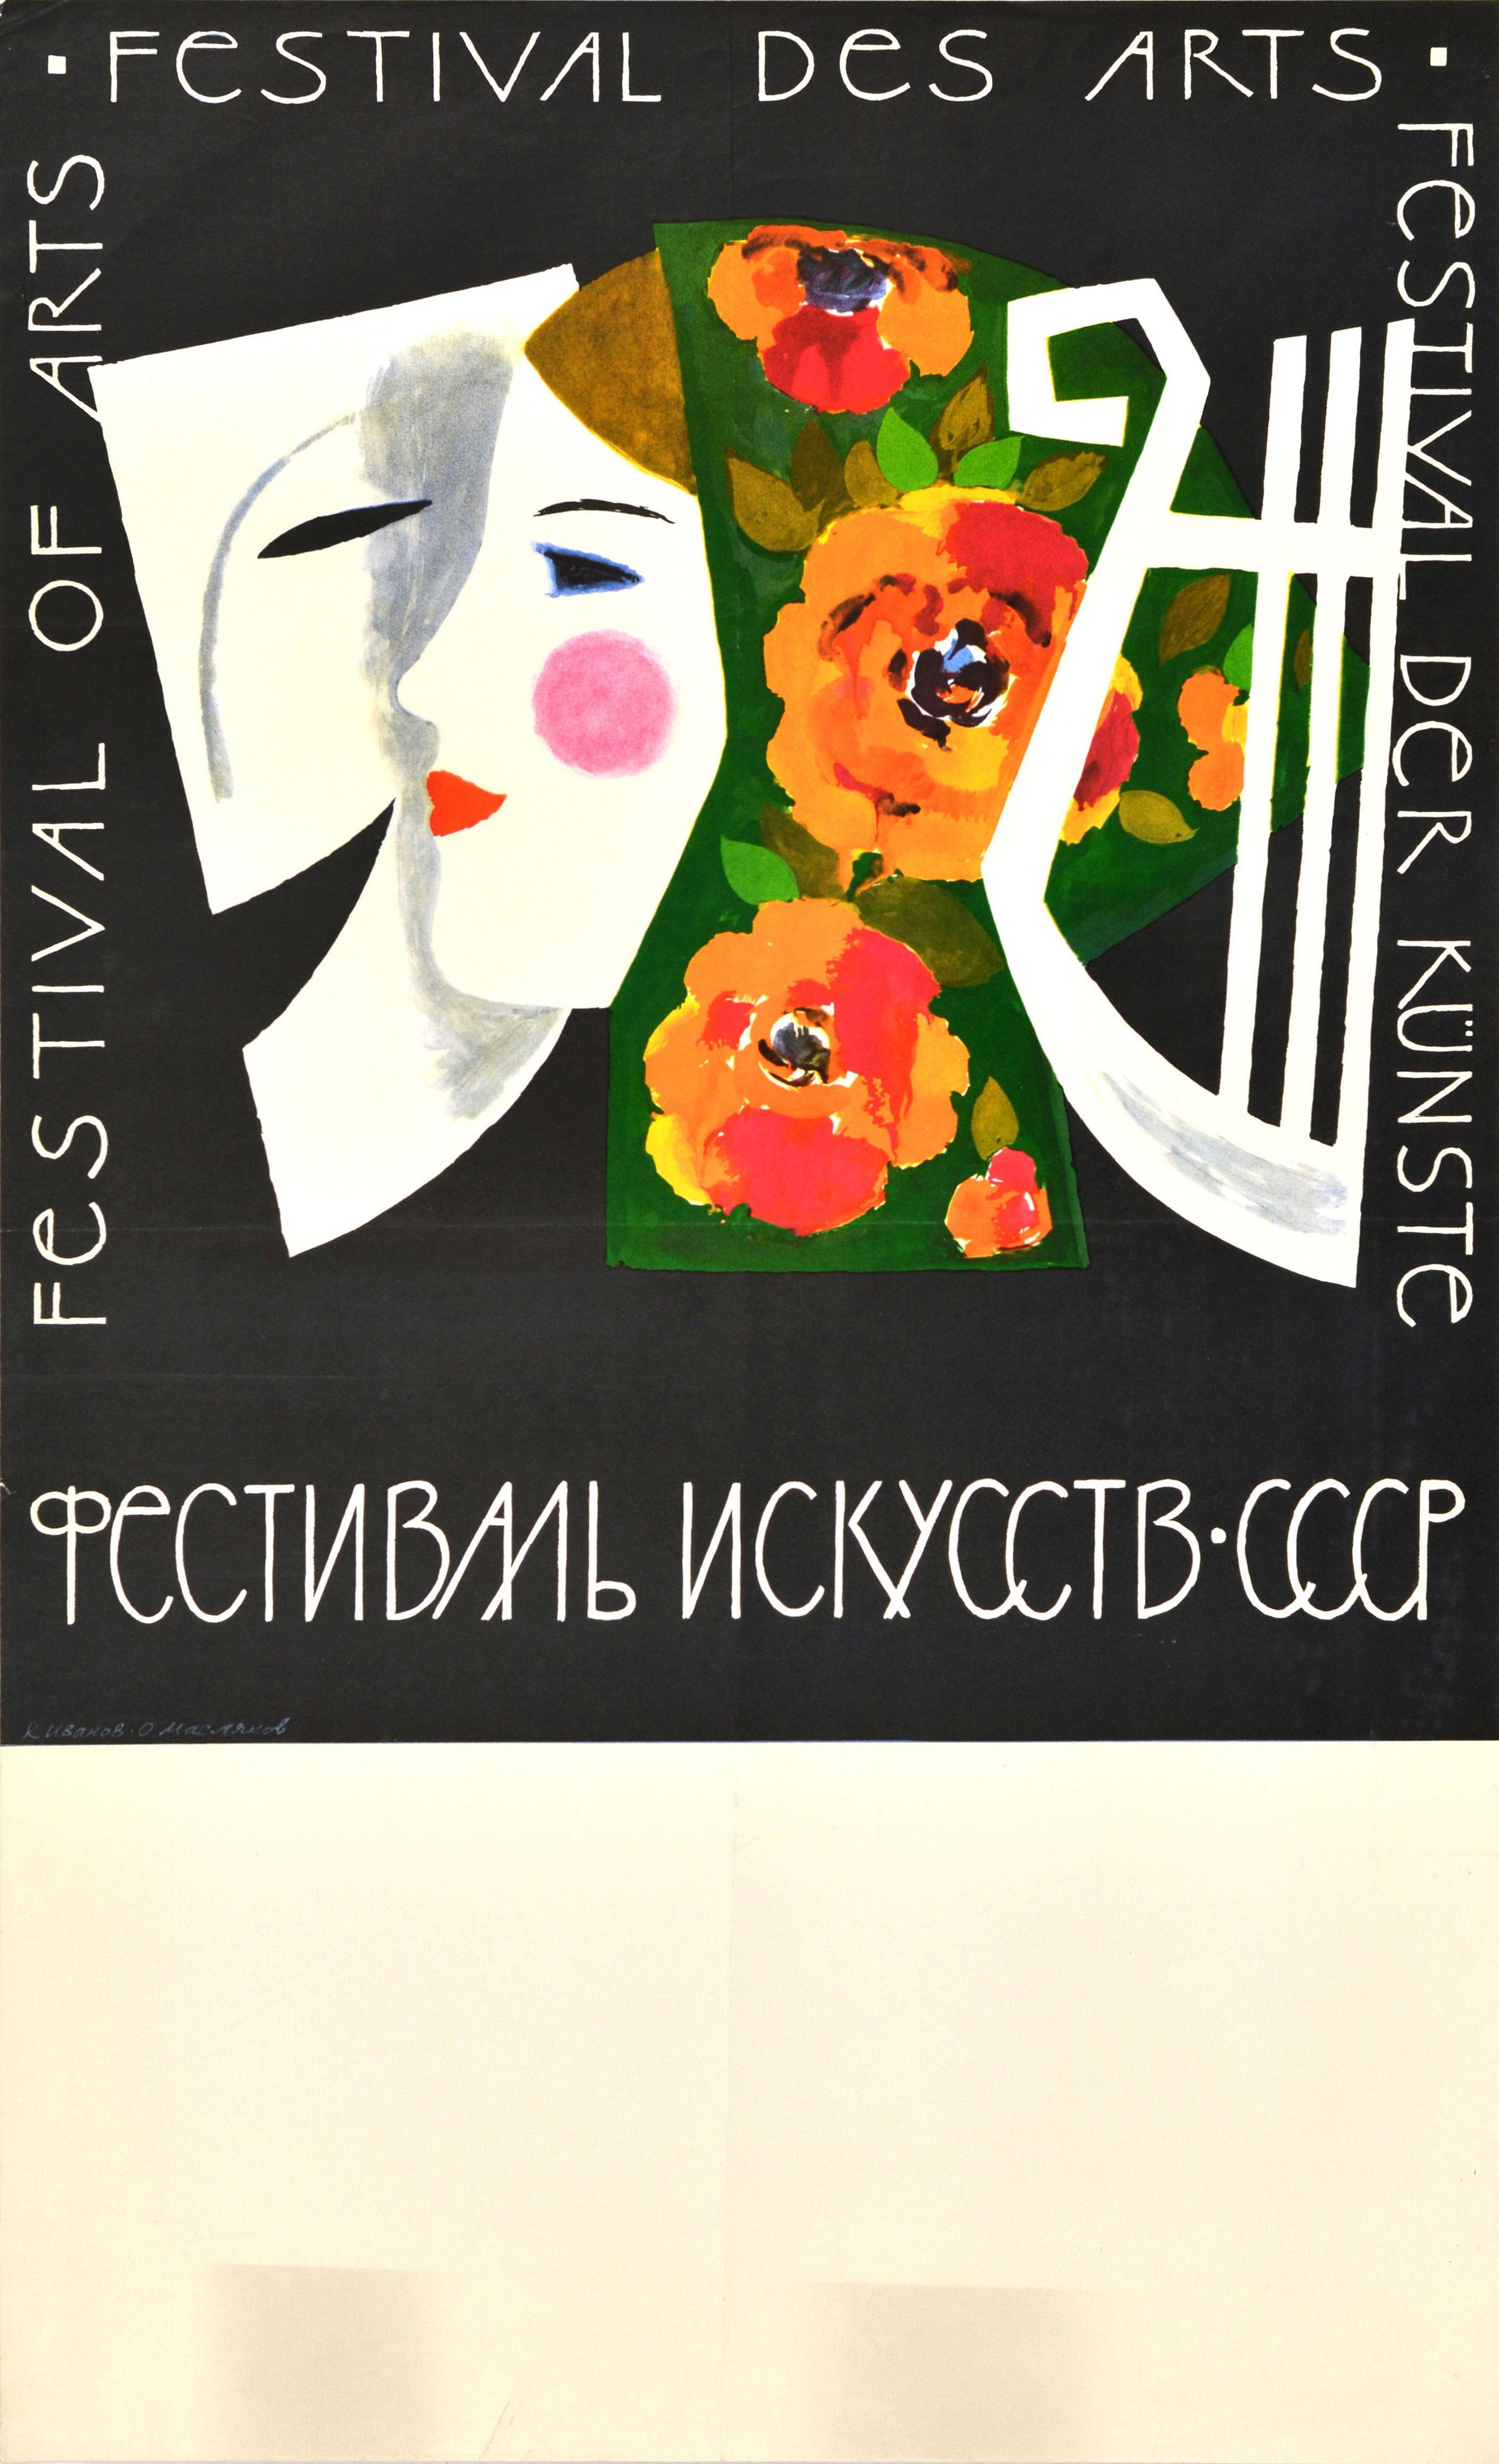 Unknown Print - Original Vintage Soviet Advertising Poster Festival Of Arts Kunste Design Mask